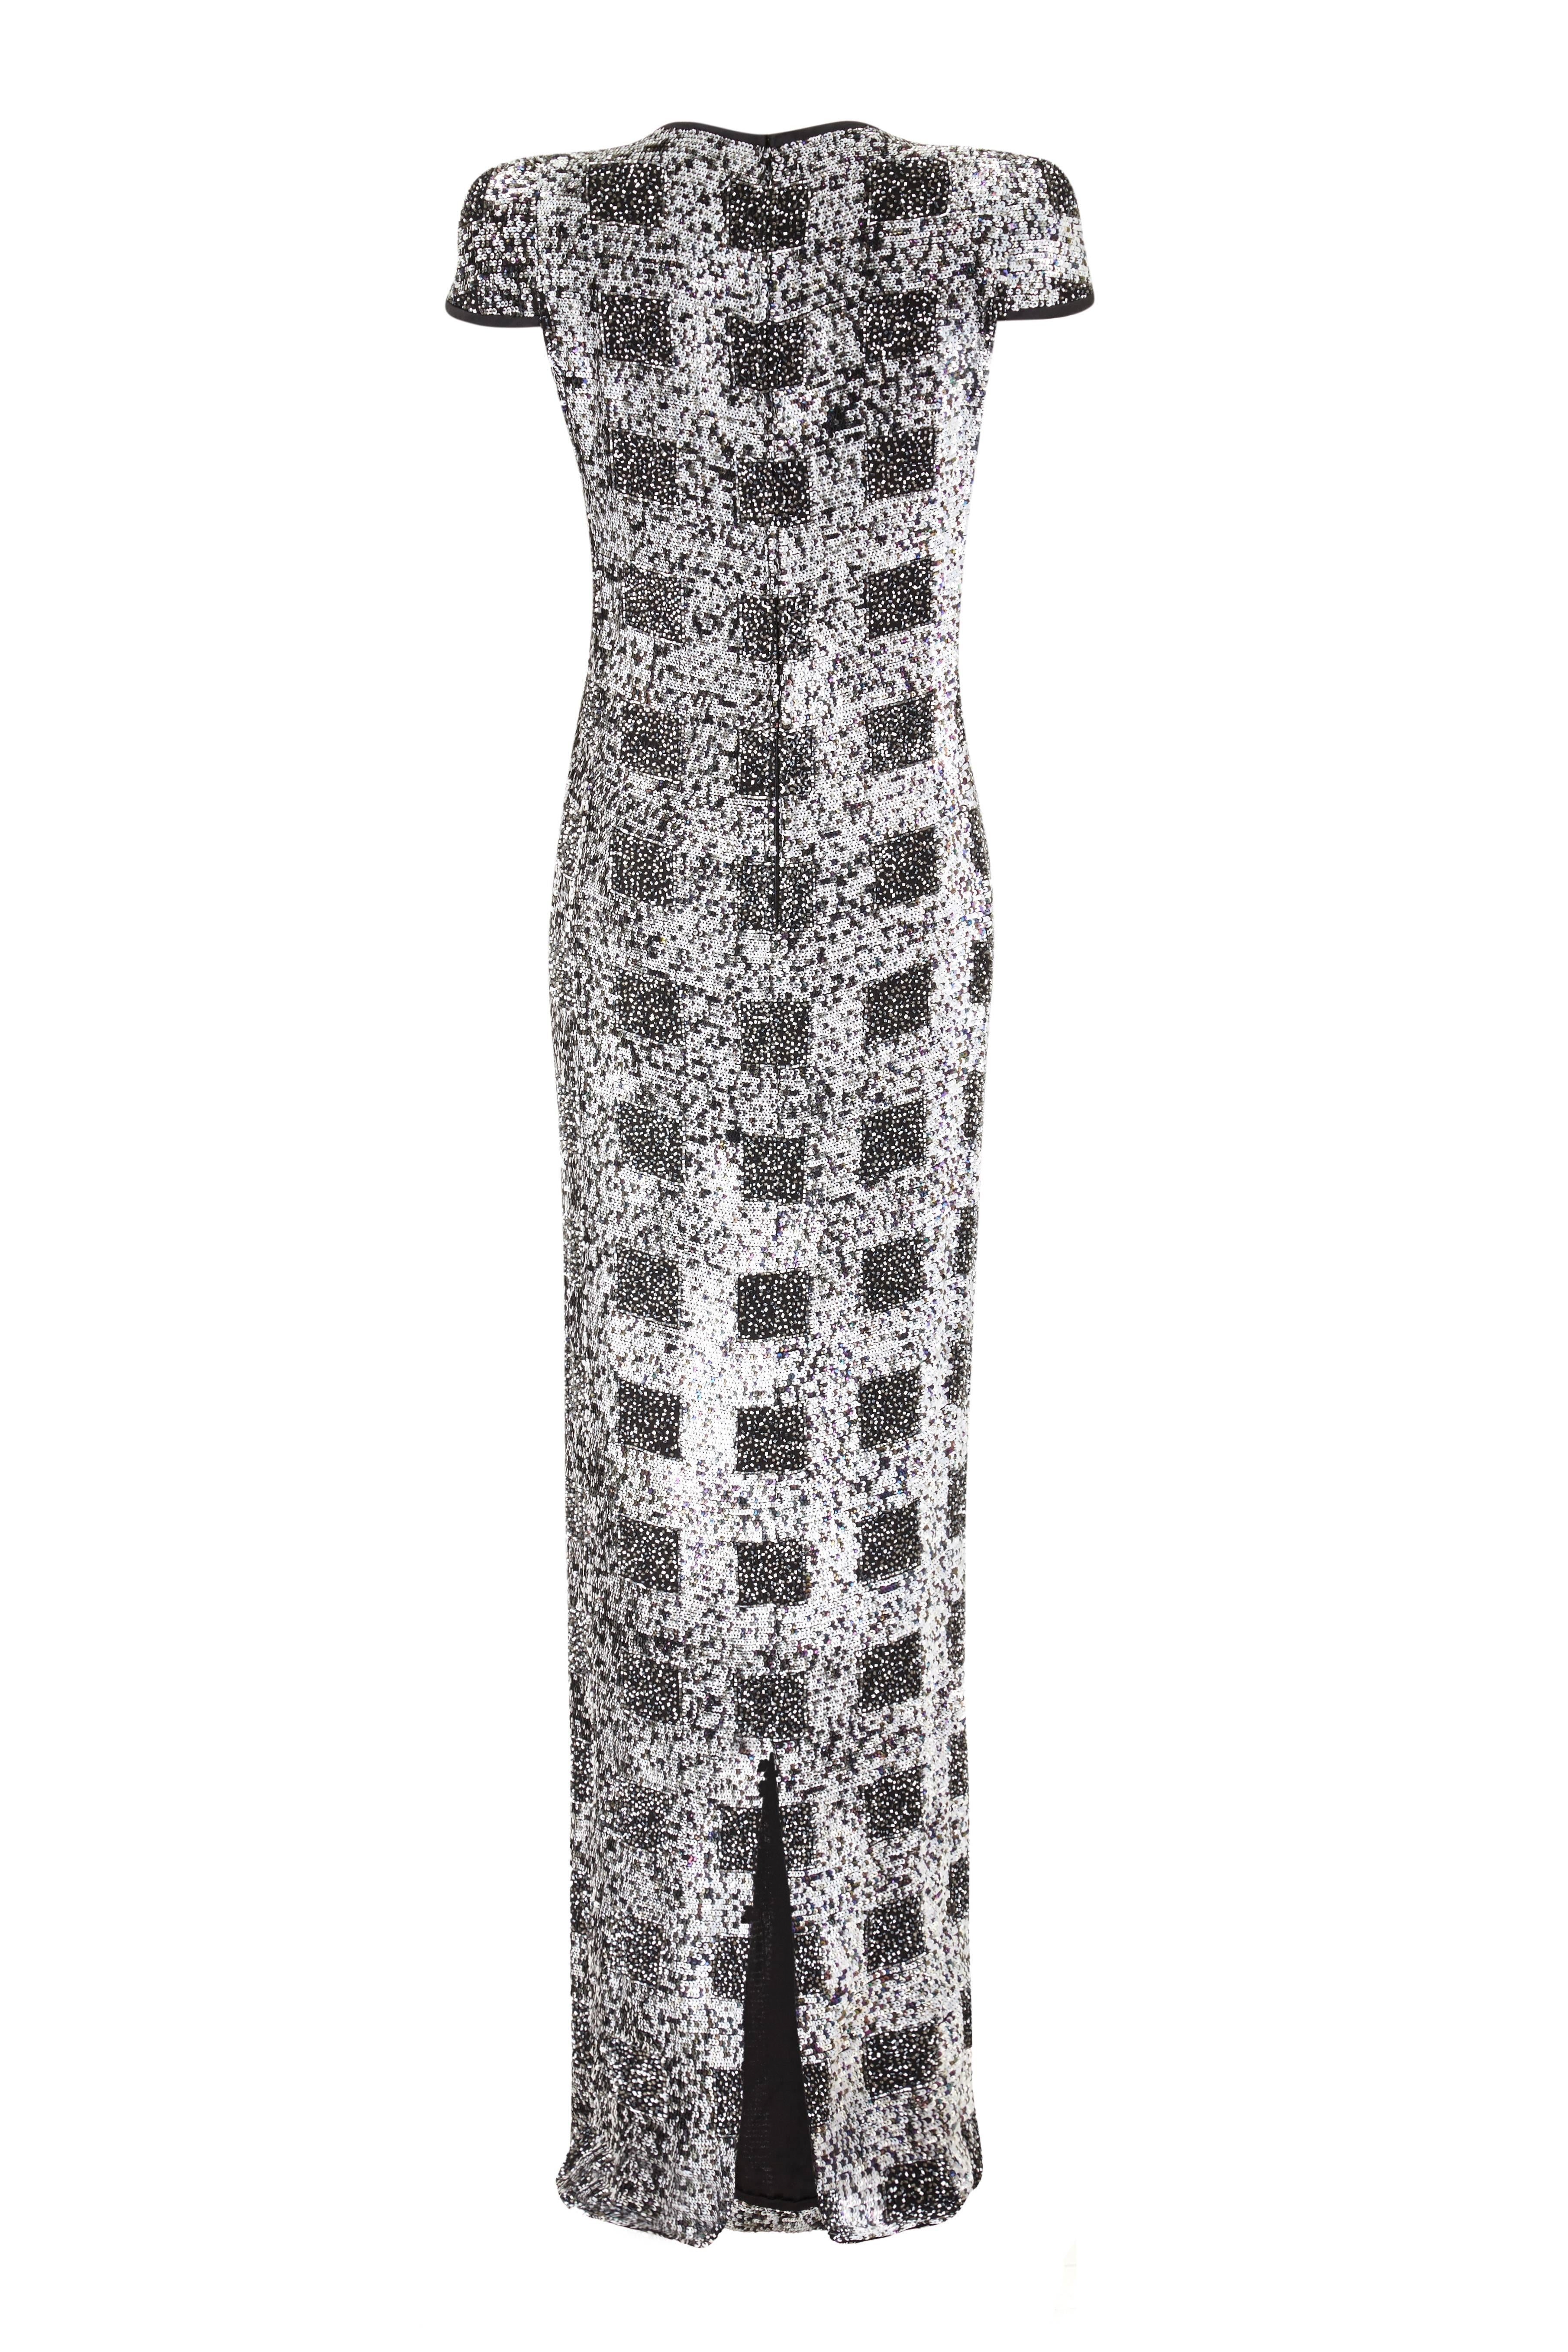 Dieses perlenbesetzte, bodenlange Kleid aus den späten 1970er oder frühen 1980er Jahren stammt von dem klassischen italienischen Designer Andre Laug und ist von außergewöhnlicher Qualität. Dieses unglaubliche Kleid ist komplett mit monochromen und